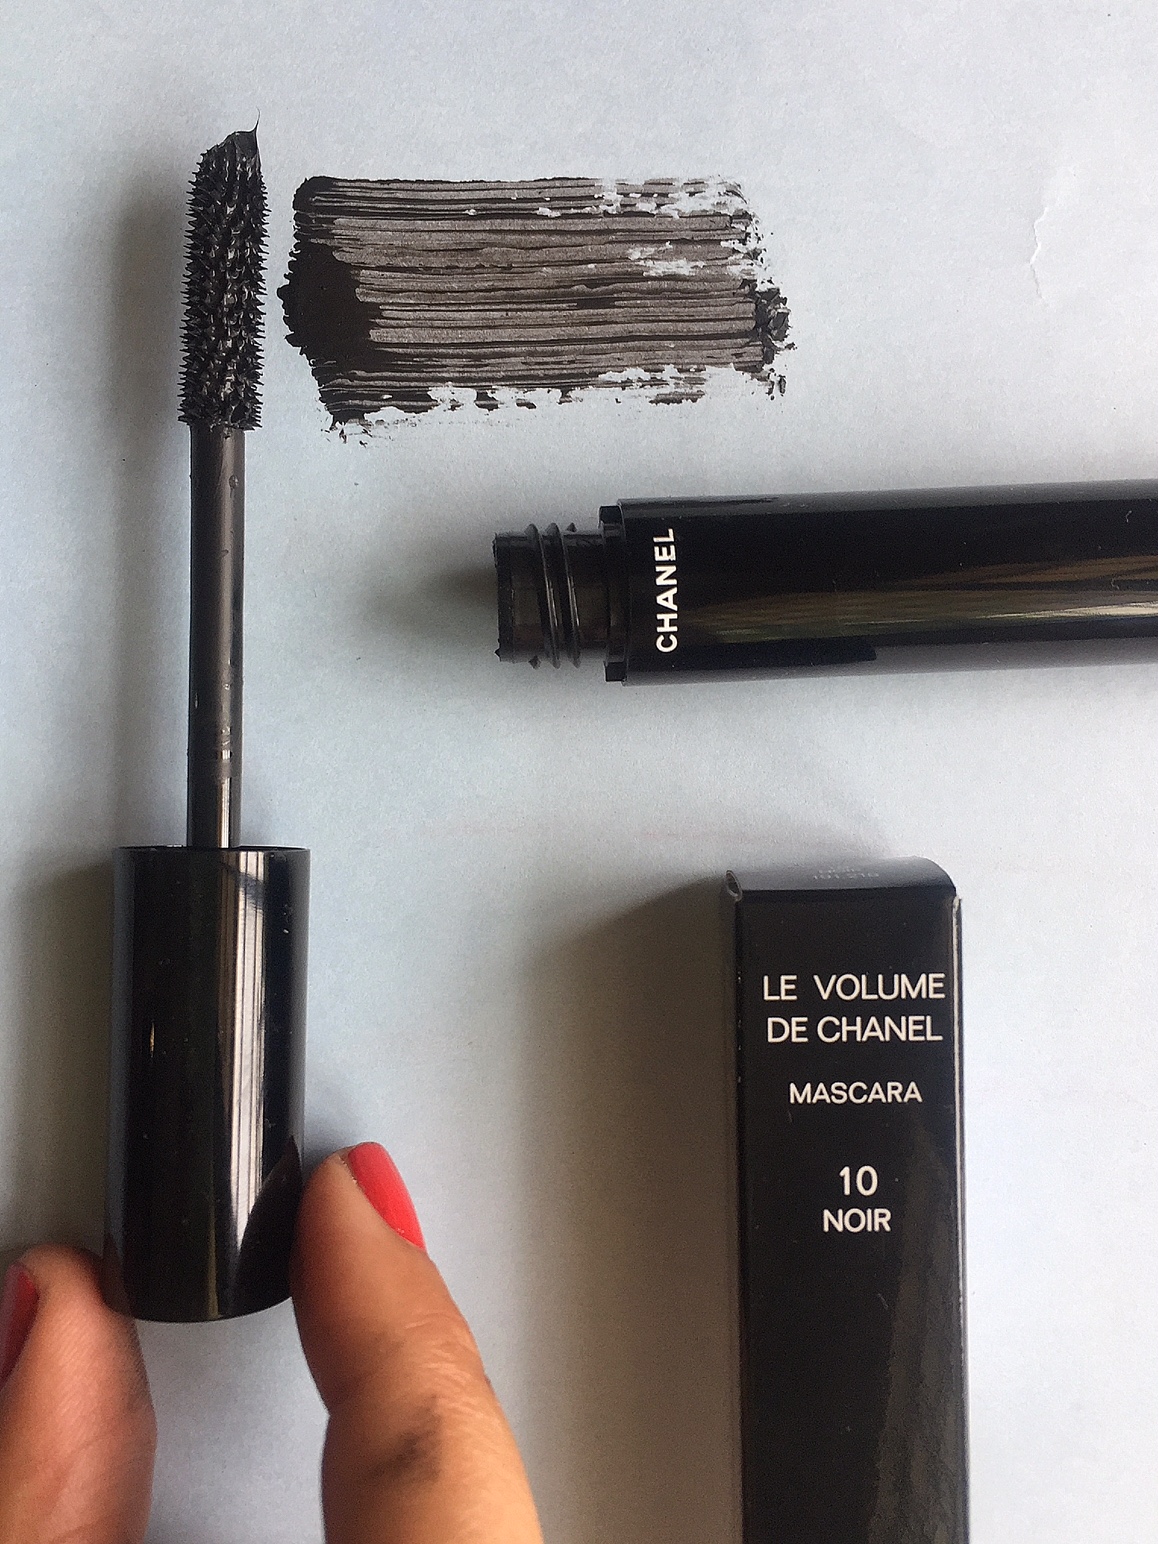 Chanel Le Volume De Chanel Mascara 10 Noir - Unboxing & Review 